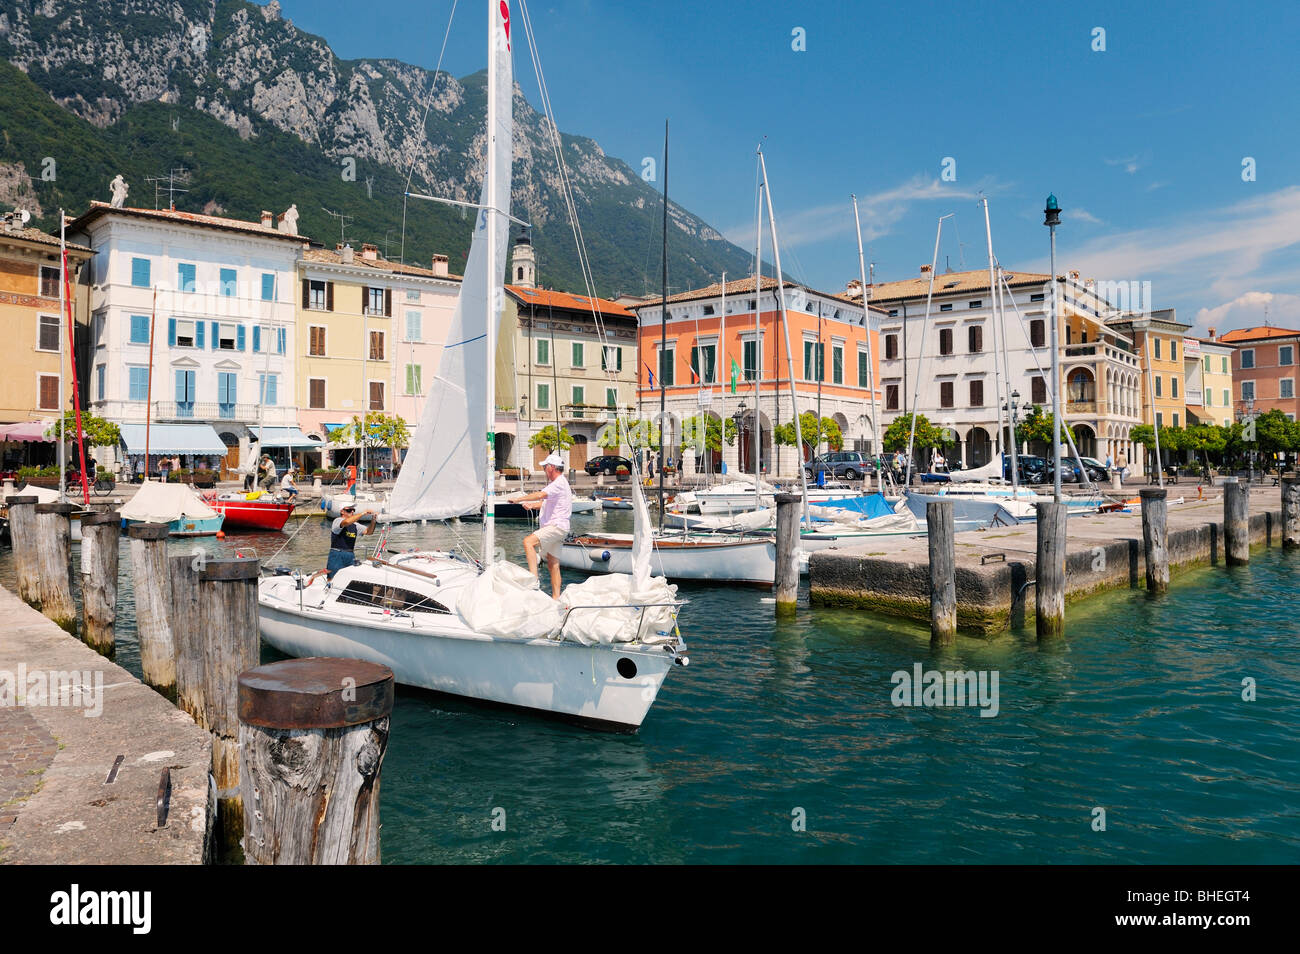 L'holiday resort comune di Gargnano sul Lago di Garda, Lombardia, Italia. Barche a vela di lasciare il porto. Lago di Garda. Foto Stock